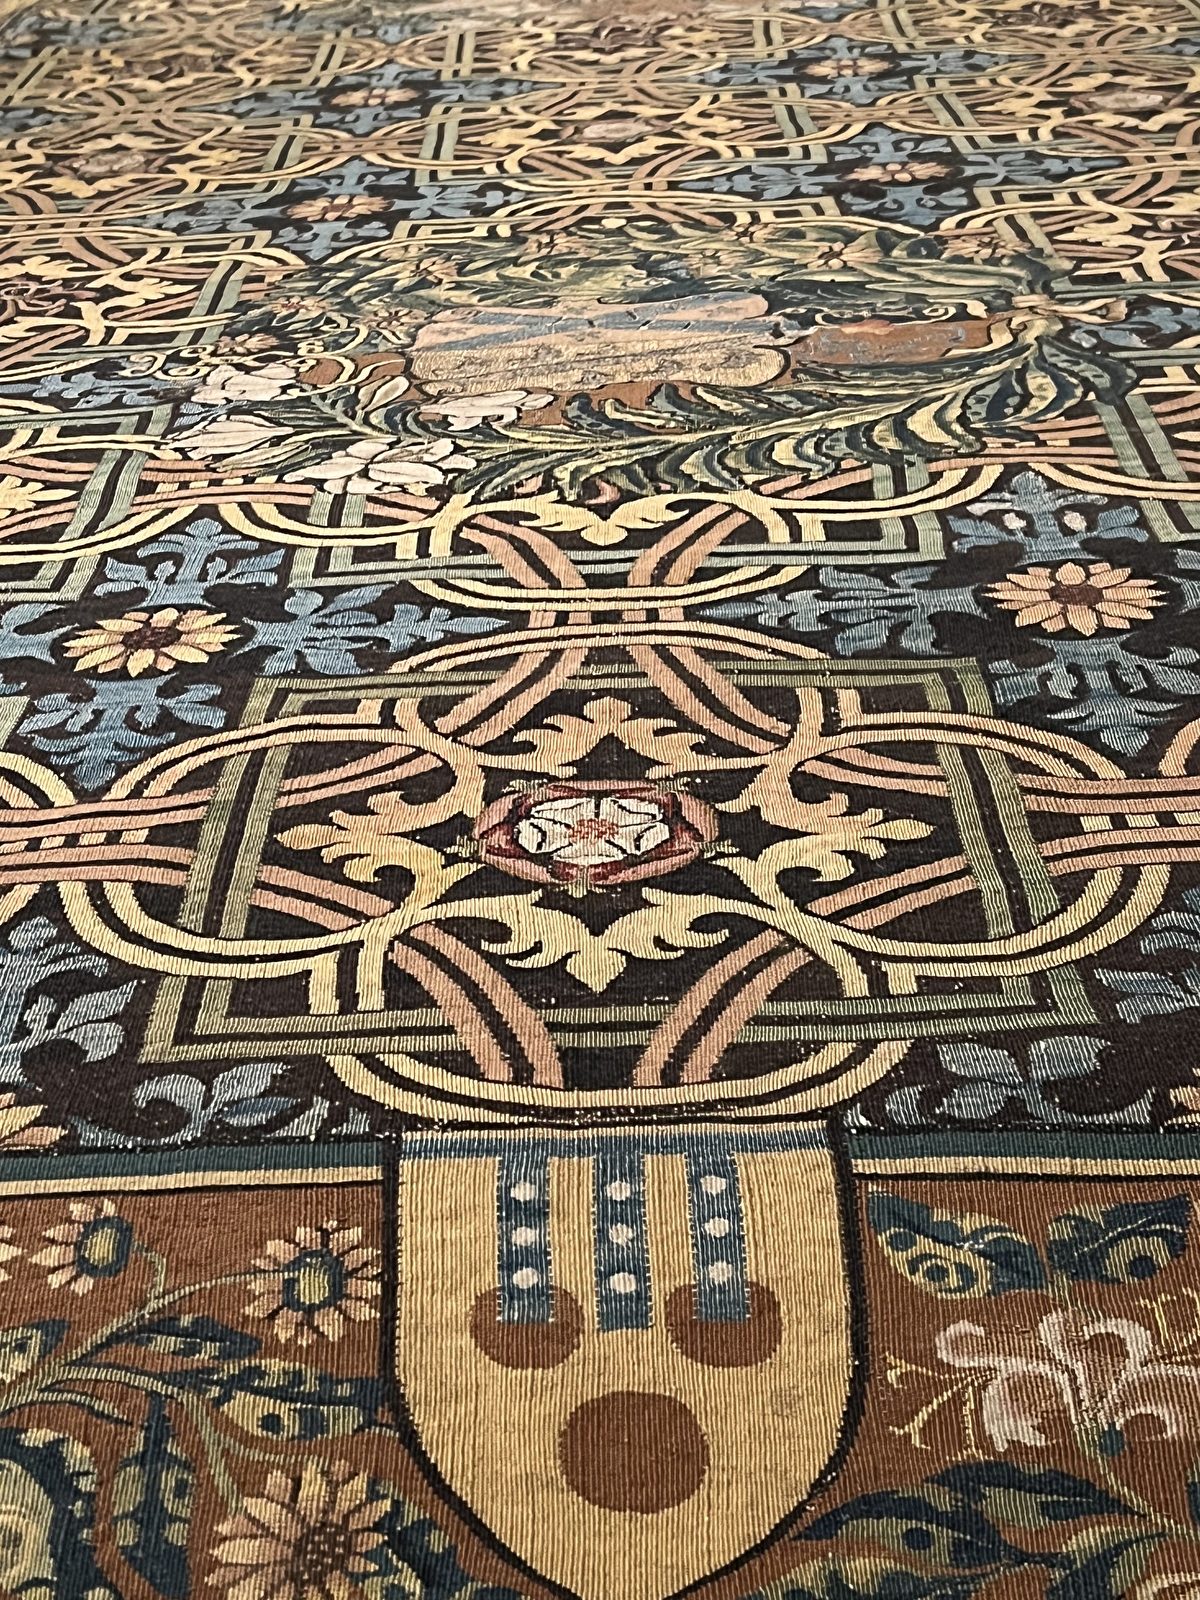 Hình 1: Hoa văn dệt trên tấm thảm vải kate nổi lên sắc vàng óng ánh. (Ảnh do Wei J C cung cấp)